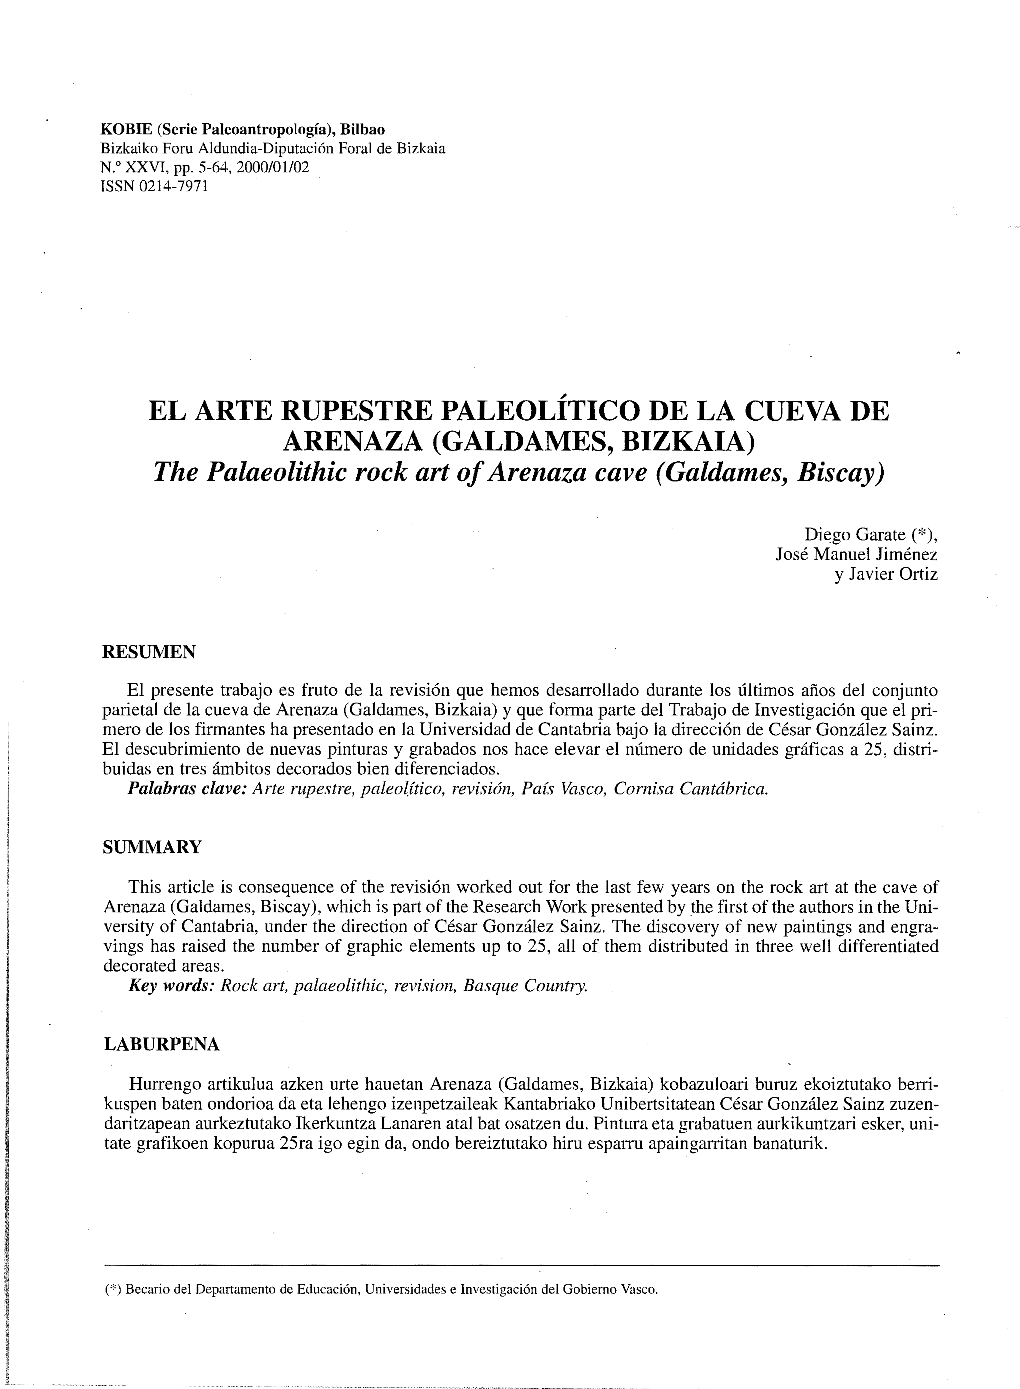 Arte Rupestre Paleolítico De La Cueva De Arenaza (Galdames)